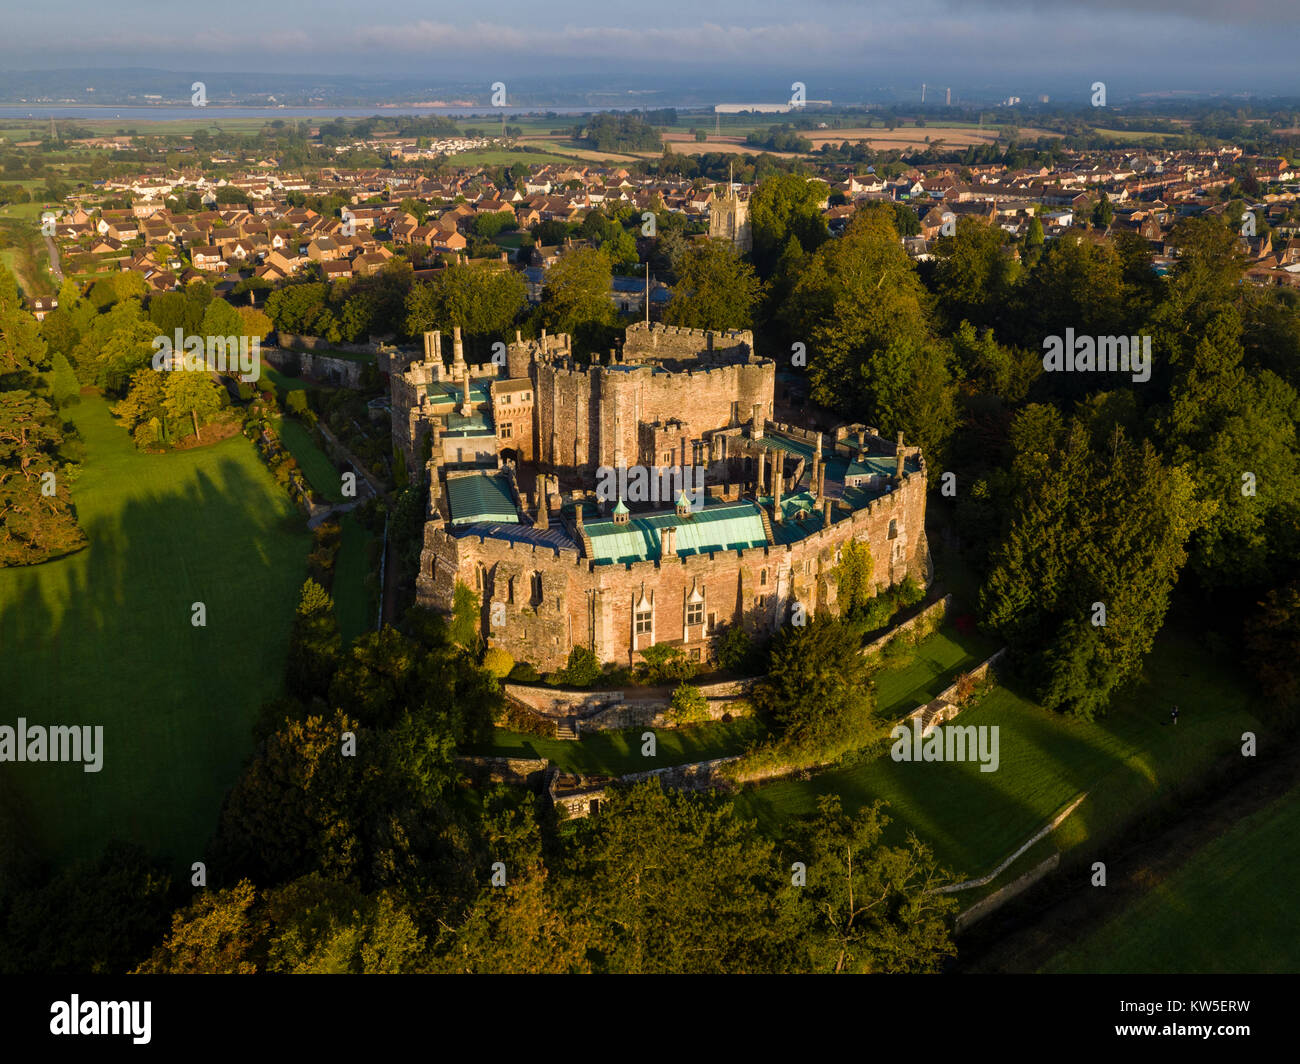 Luftaufnahme von Berkeley Castle, Gloucestershire, UK. Schuss mit einer Drohne durch ein UK CAA drone Inhabers mit Erlaubnis. Stockfoto